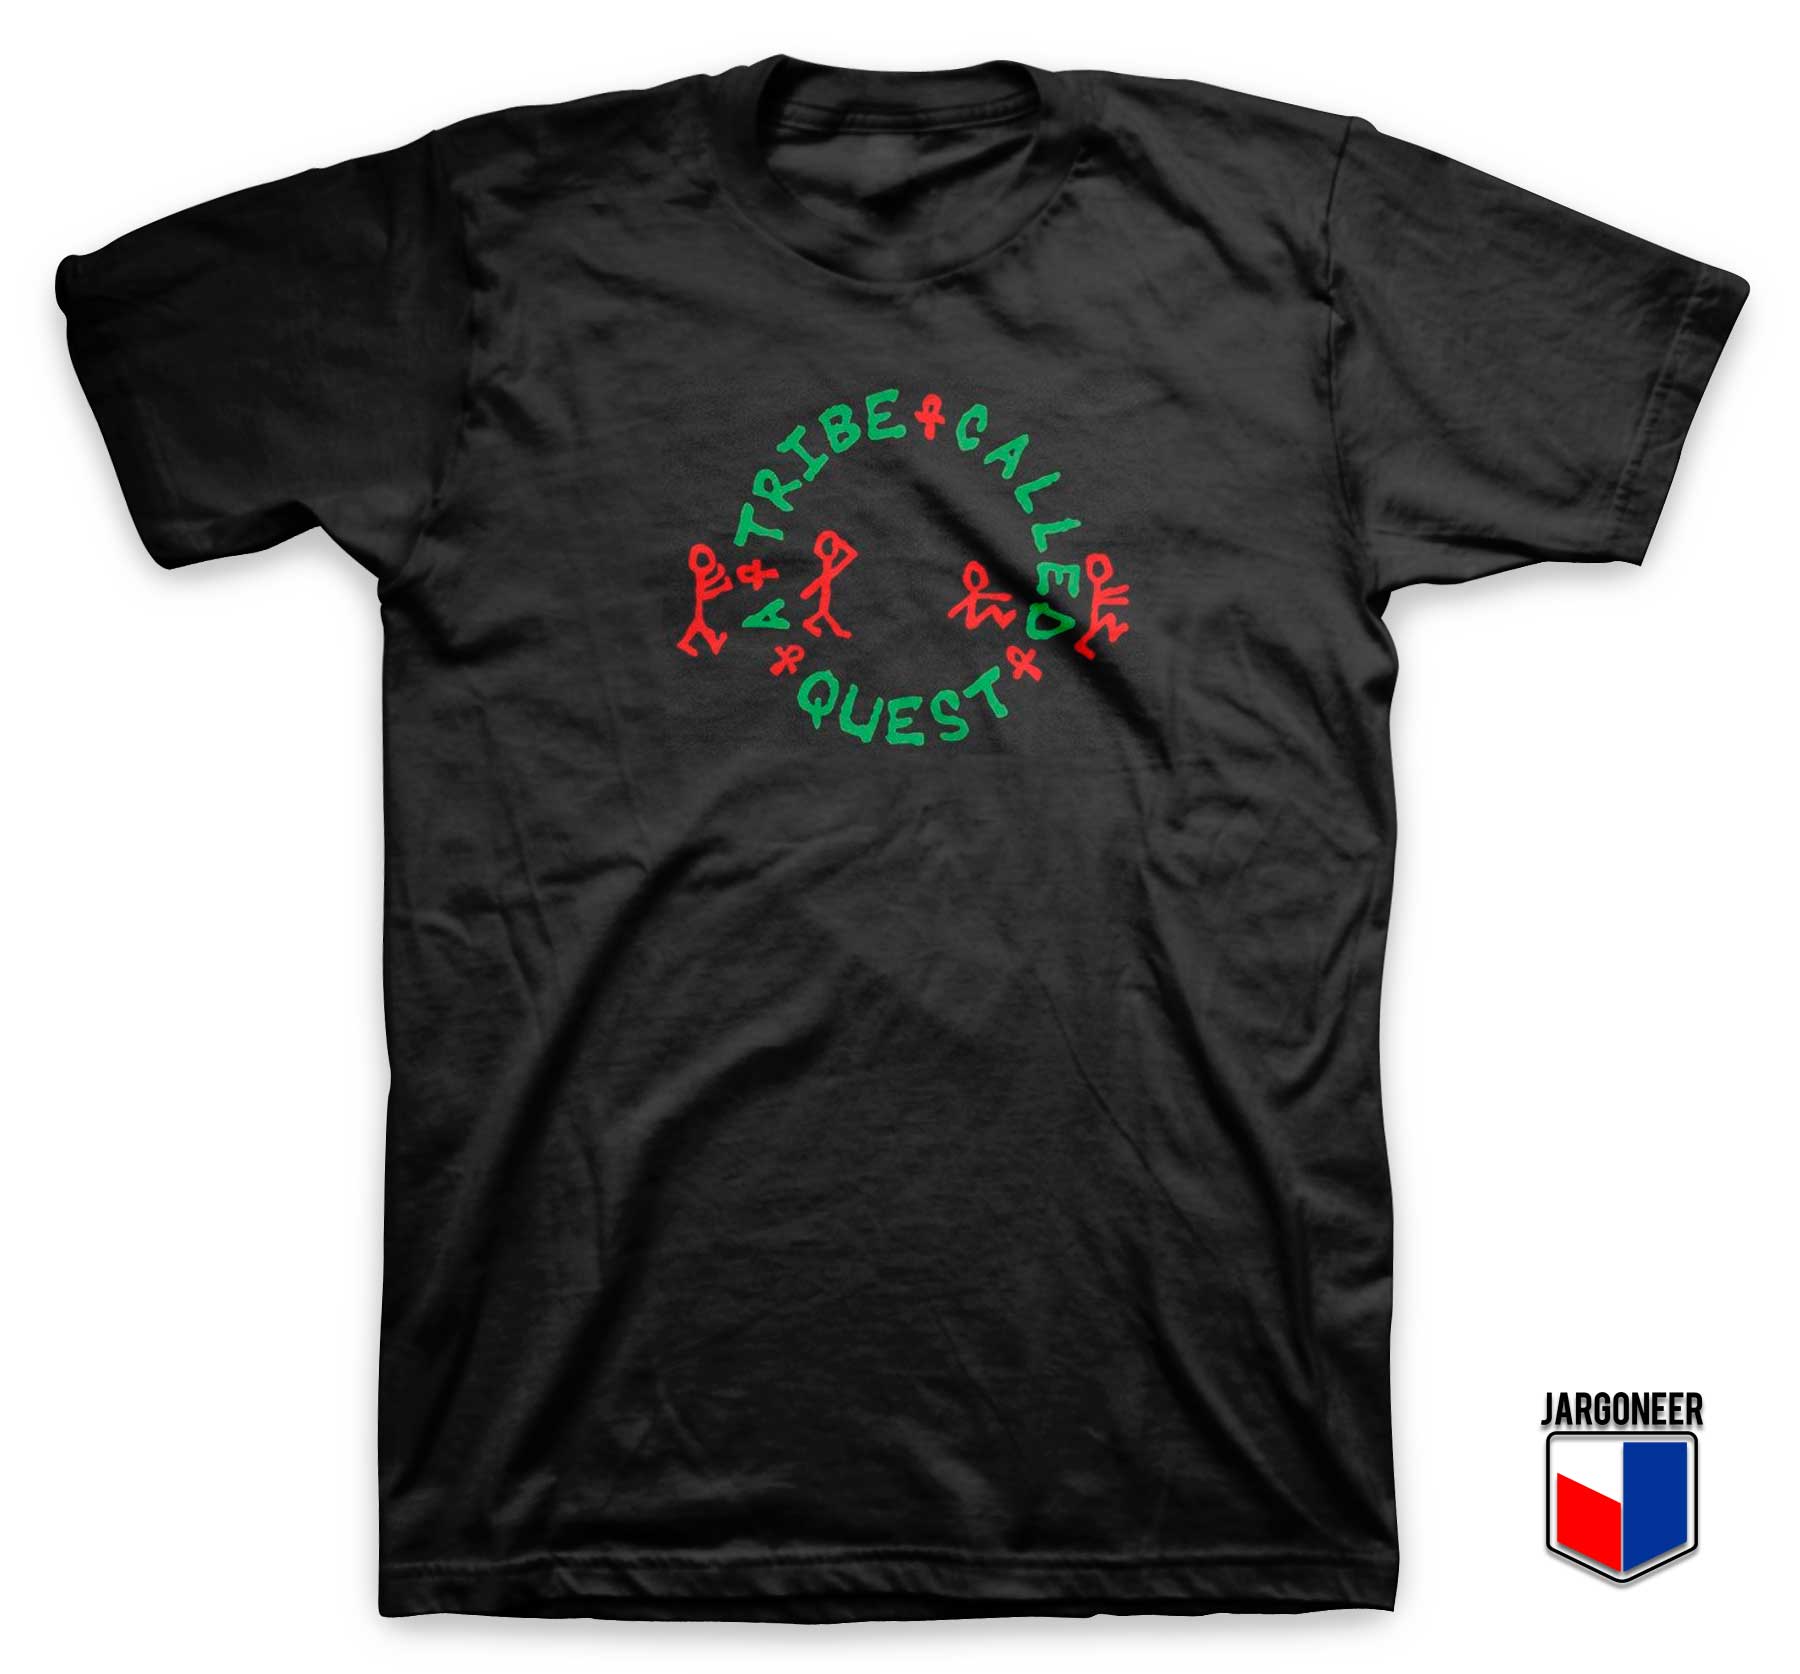 A Tribe Called Quest T Shirt - Shop Unique Graphic Cool Shirt Designs